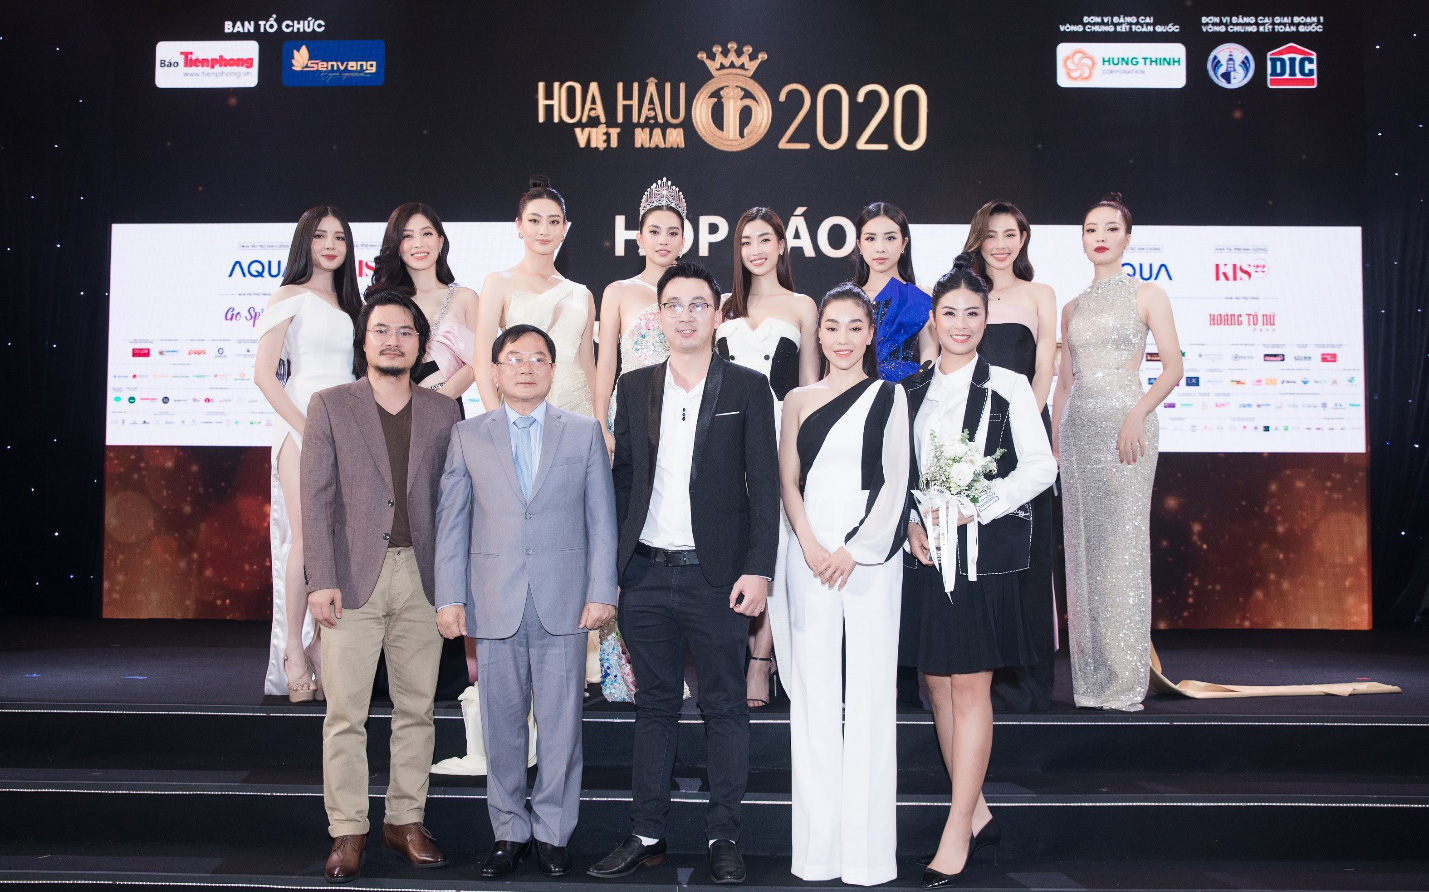 Mỹ phẩm Kis22 đồng hành cùng Hoa hậu Việt Nam 2020 trong buổi Họp báo Chung kết toàn quốc